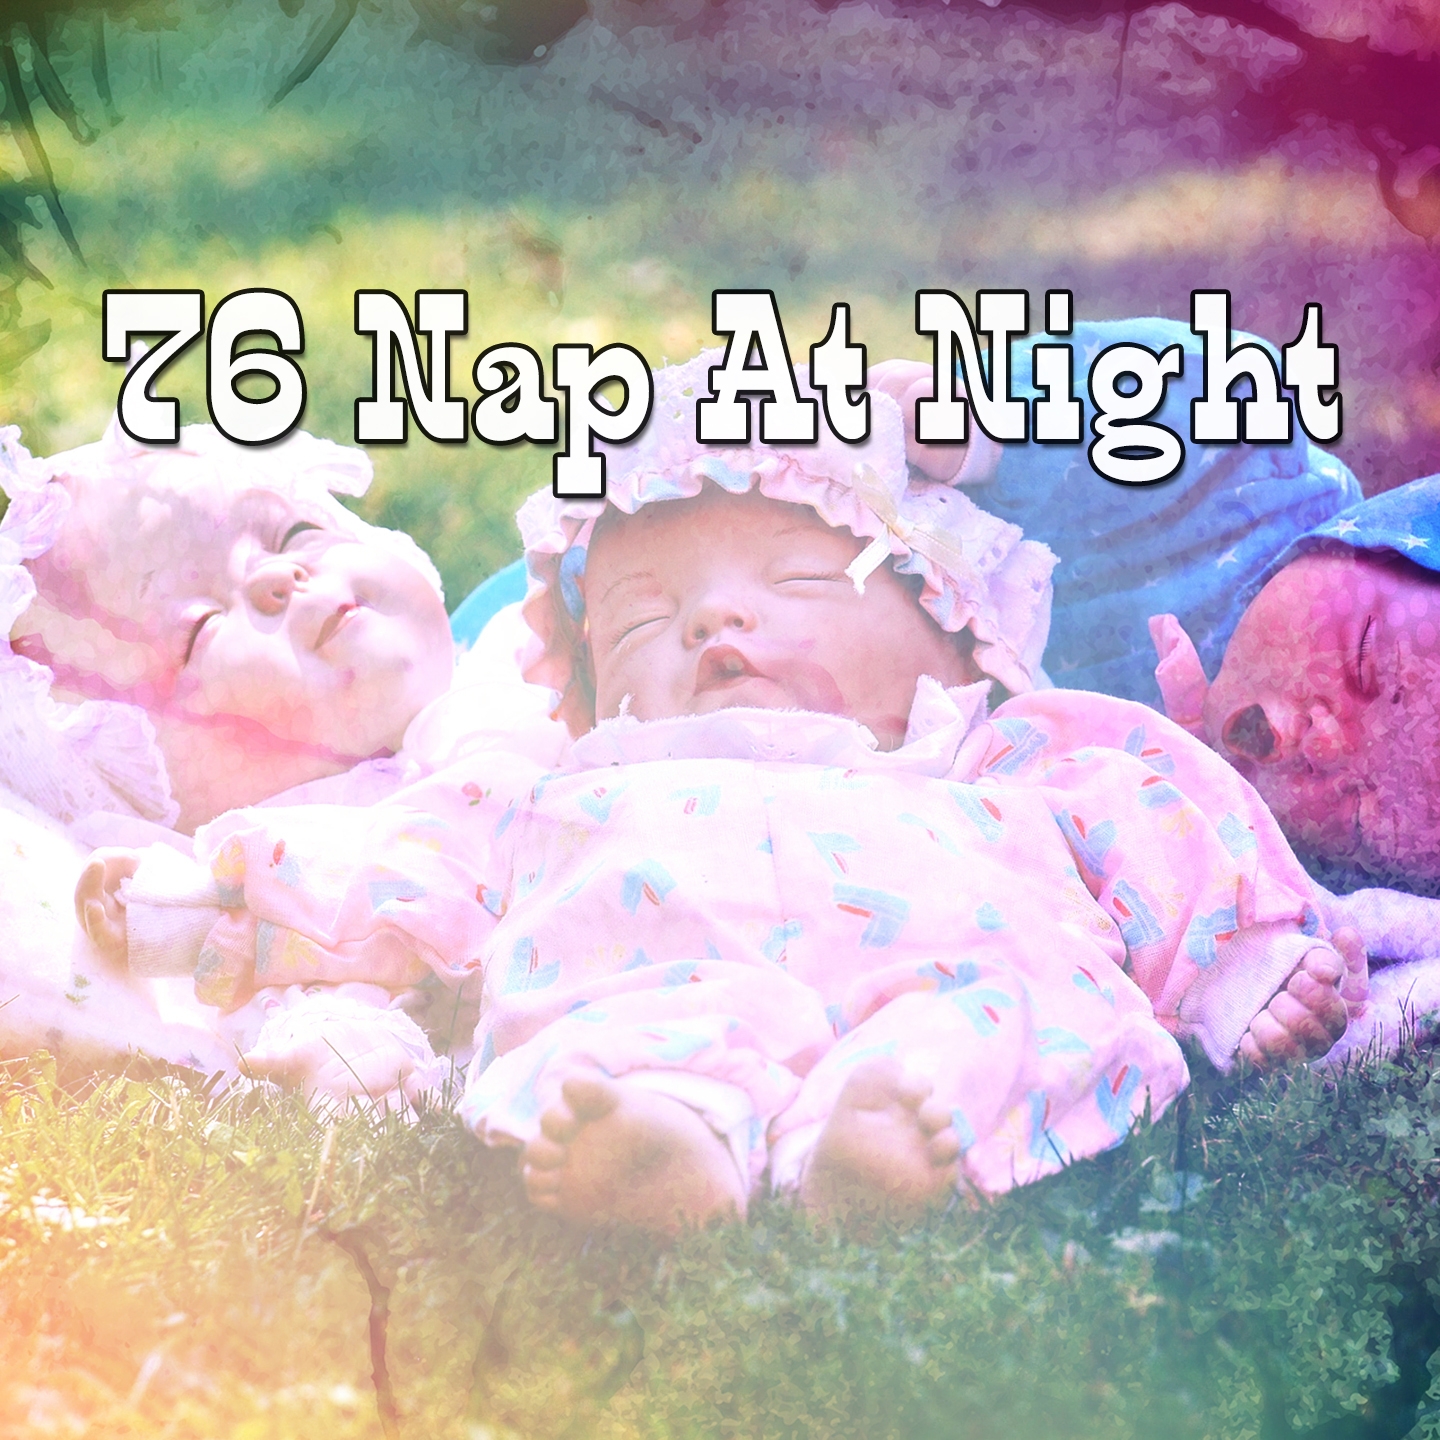 76 Nap At Night